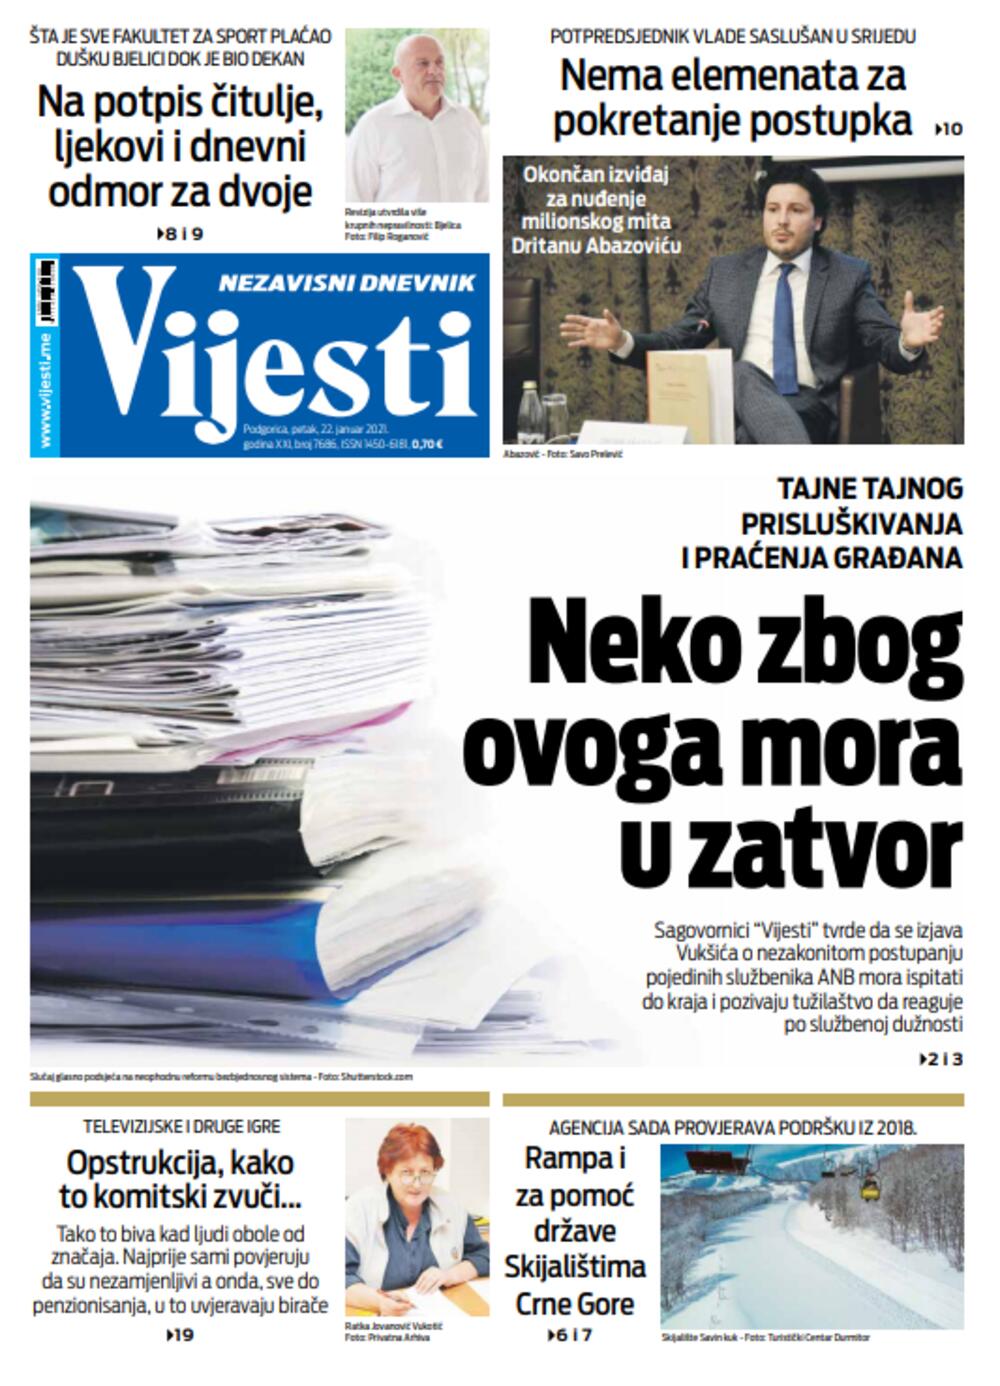 Naslovna strana "Vijesti" za 22. januar 2021., Foto: Vijesti